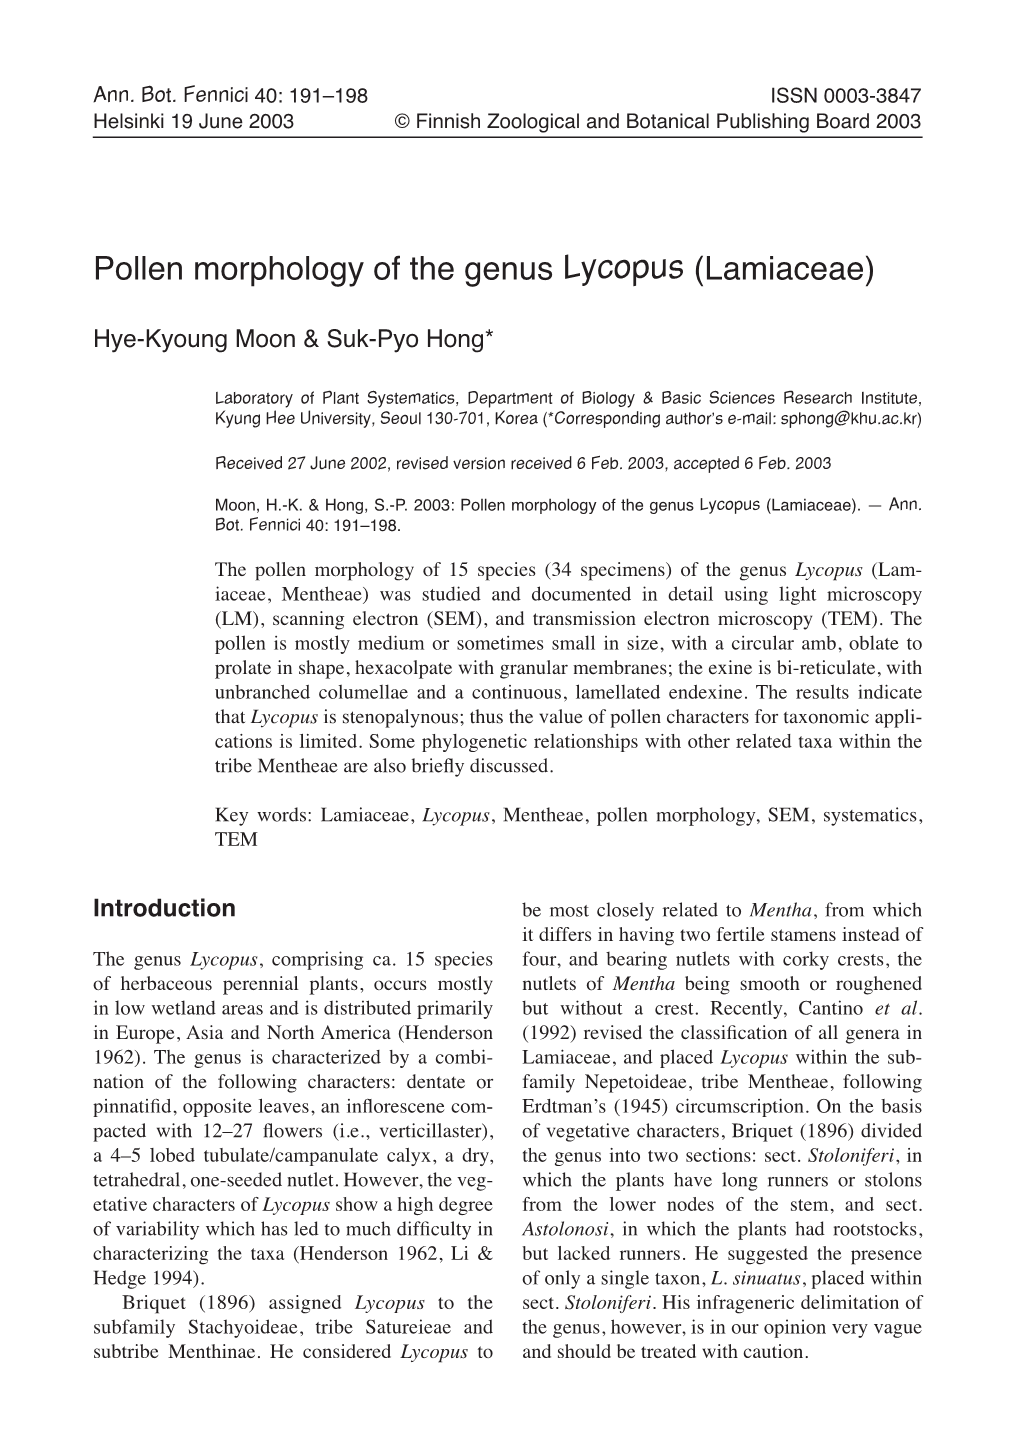 Pollen Morphology of the Genus Lycopus (Lamiaceae)